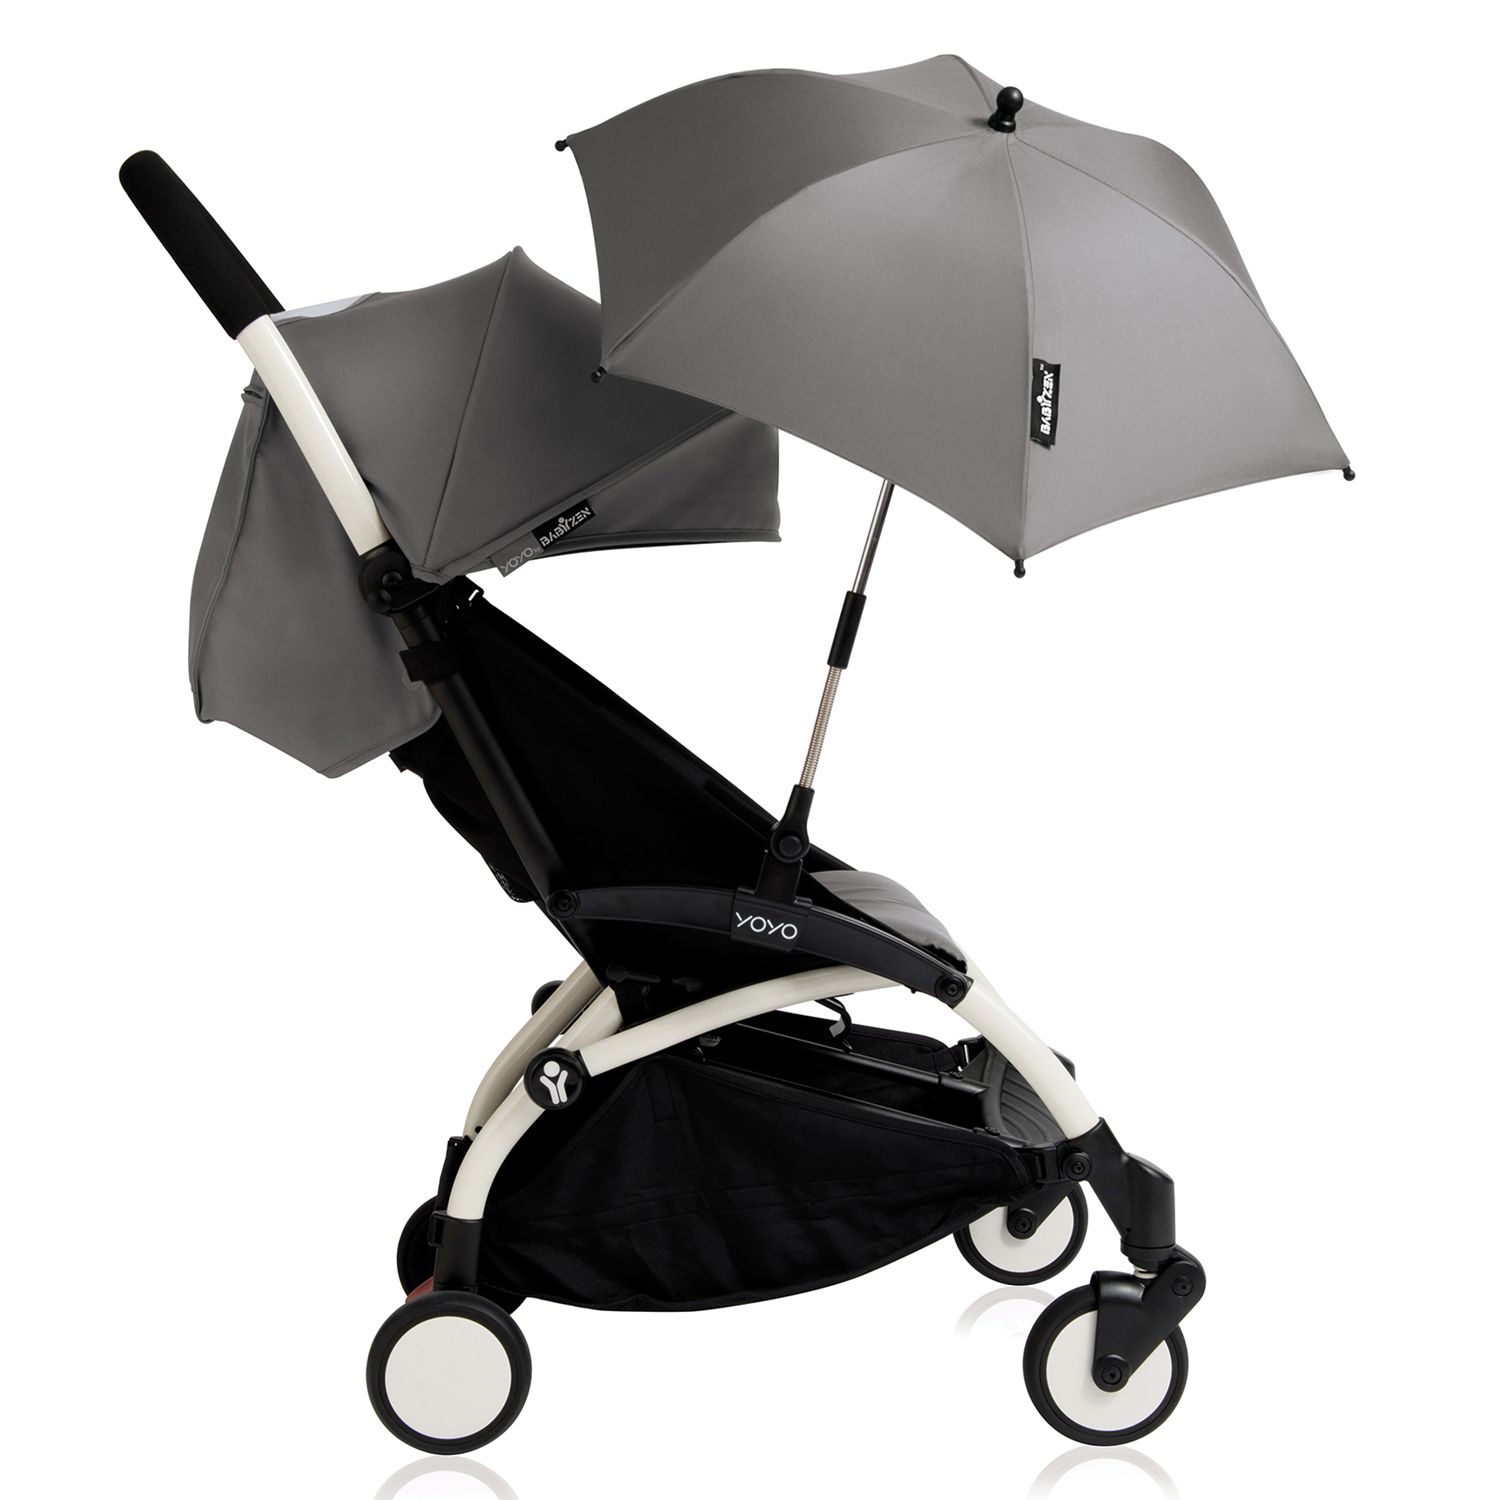 grey pushchair parasol